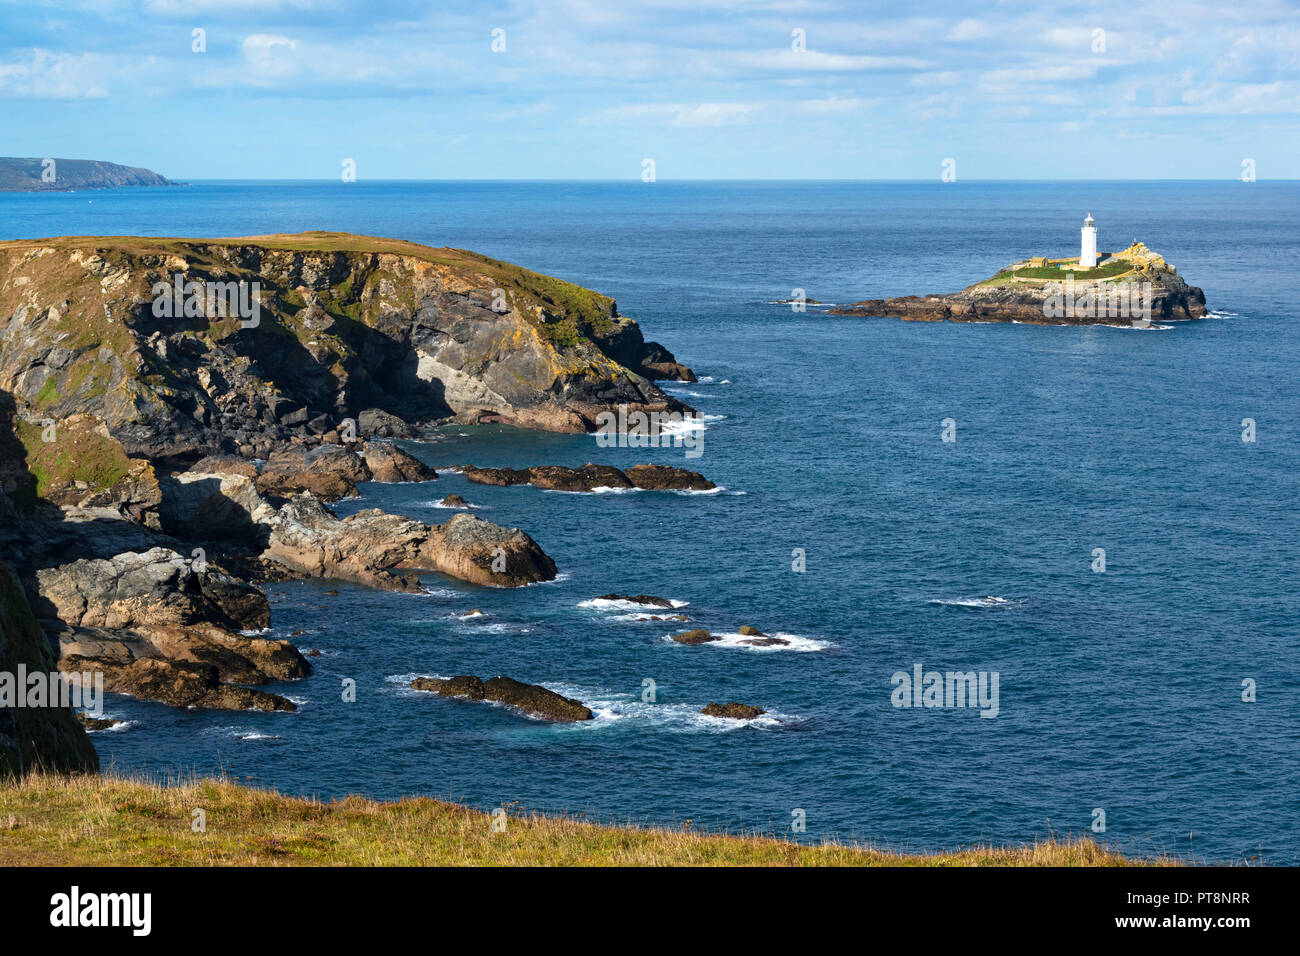 Avis de navax point et l'île de godrevy lighthouse à st.ives bay, Cornwall, Angleterre, Grande-Bretagne, Royaume-Uni. Banque D'Images